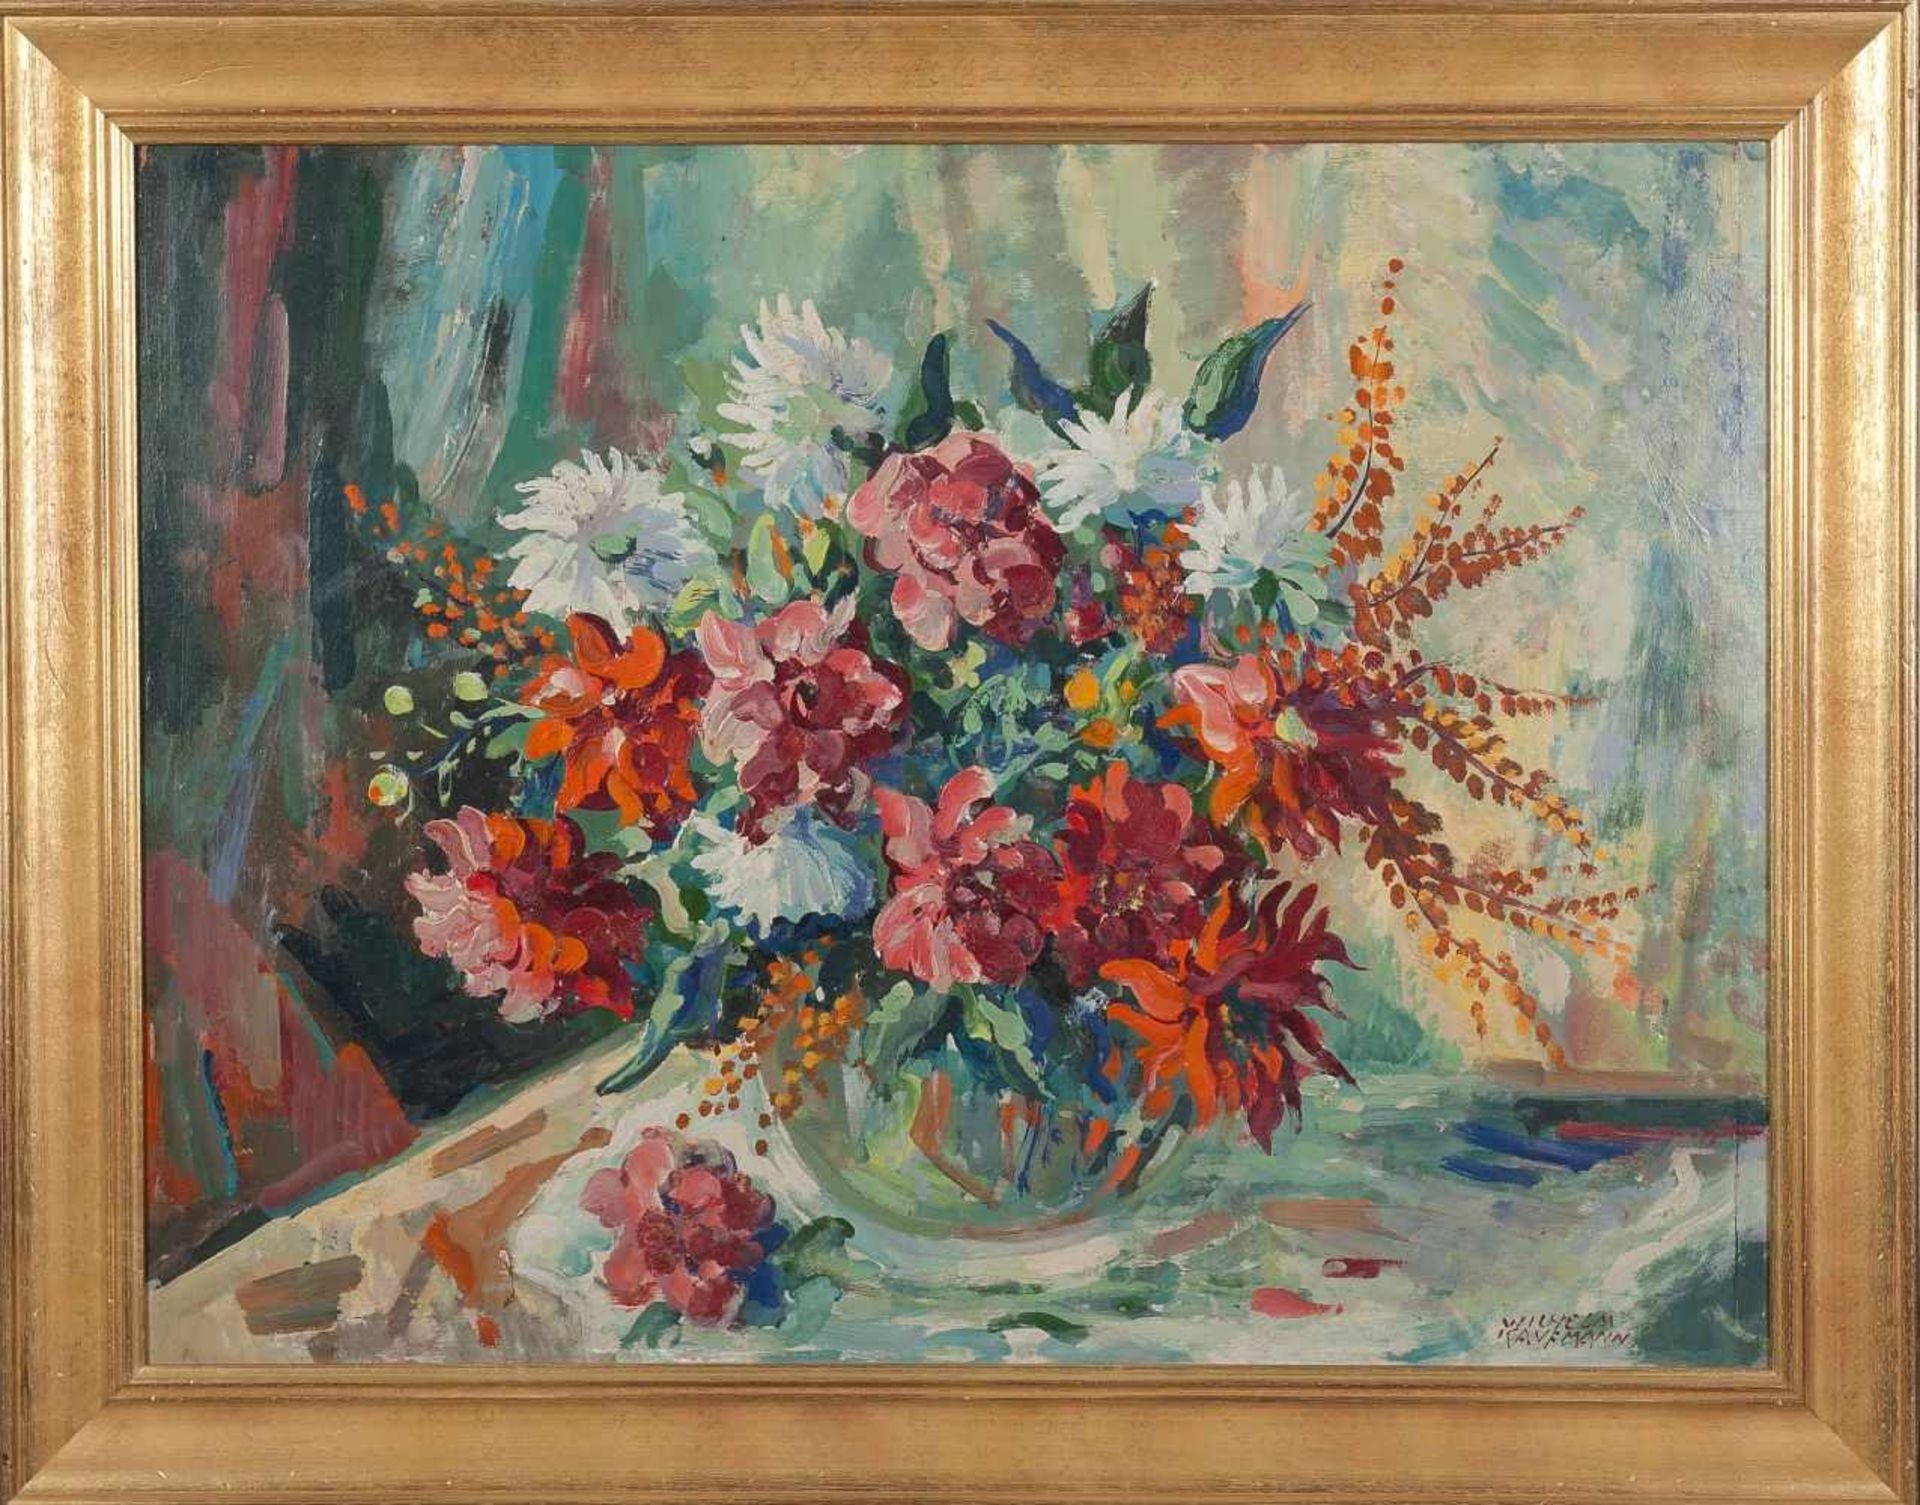 Üppiger Blumenstrauß in GlasvaseWilhelm Kaufmann(Wien 1895 - 1975)Öl auf Karton61 x 80 cm,